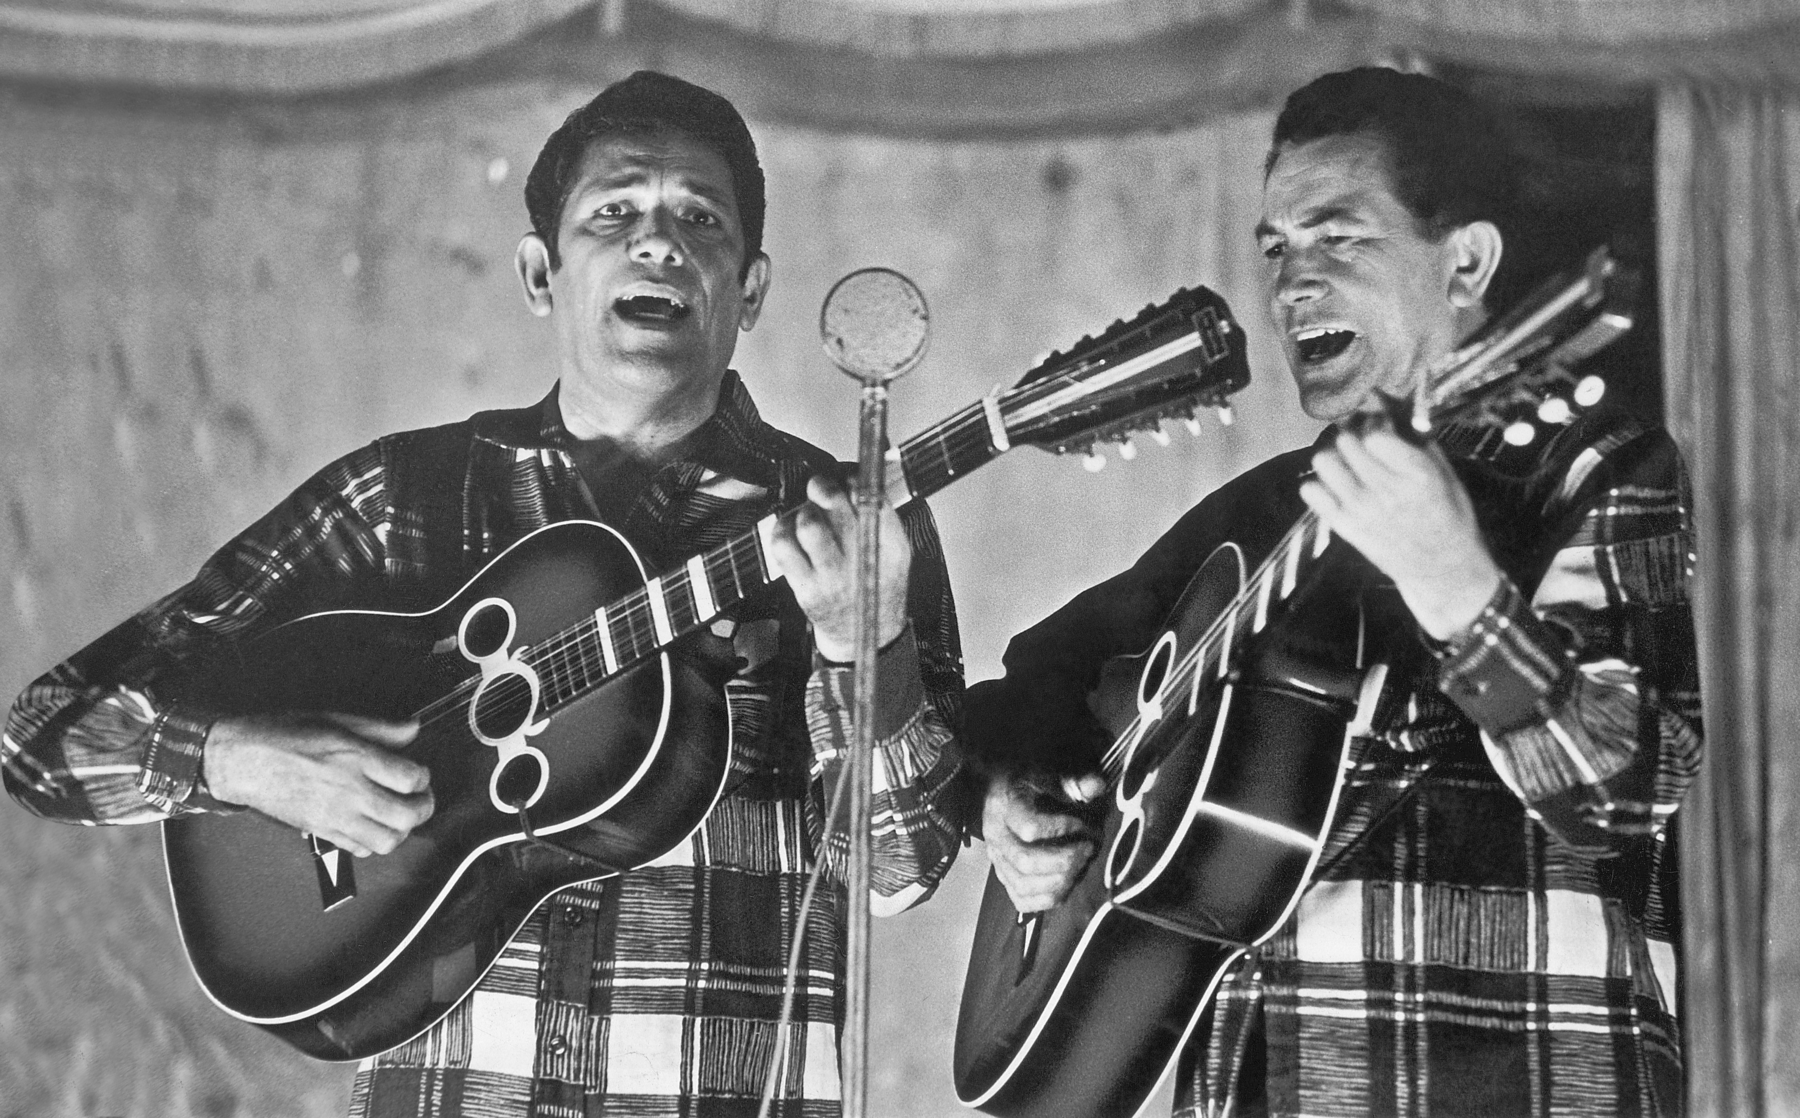 Fotografia em preto e branco. Dois homens brancos e de cabelos curtos, vestindo camisa xadrez e tocando violão, com a boca aberta. Diante eles há um microfone.